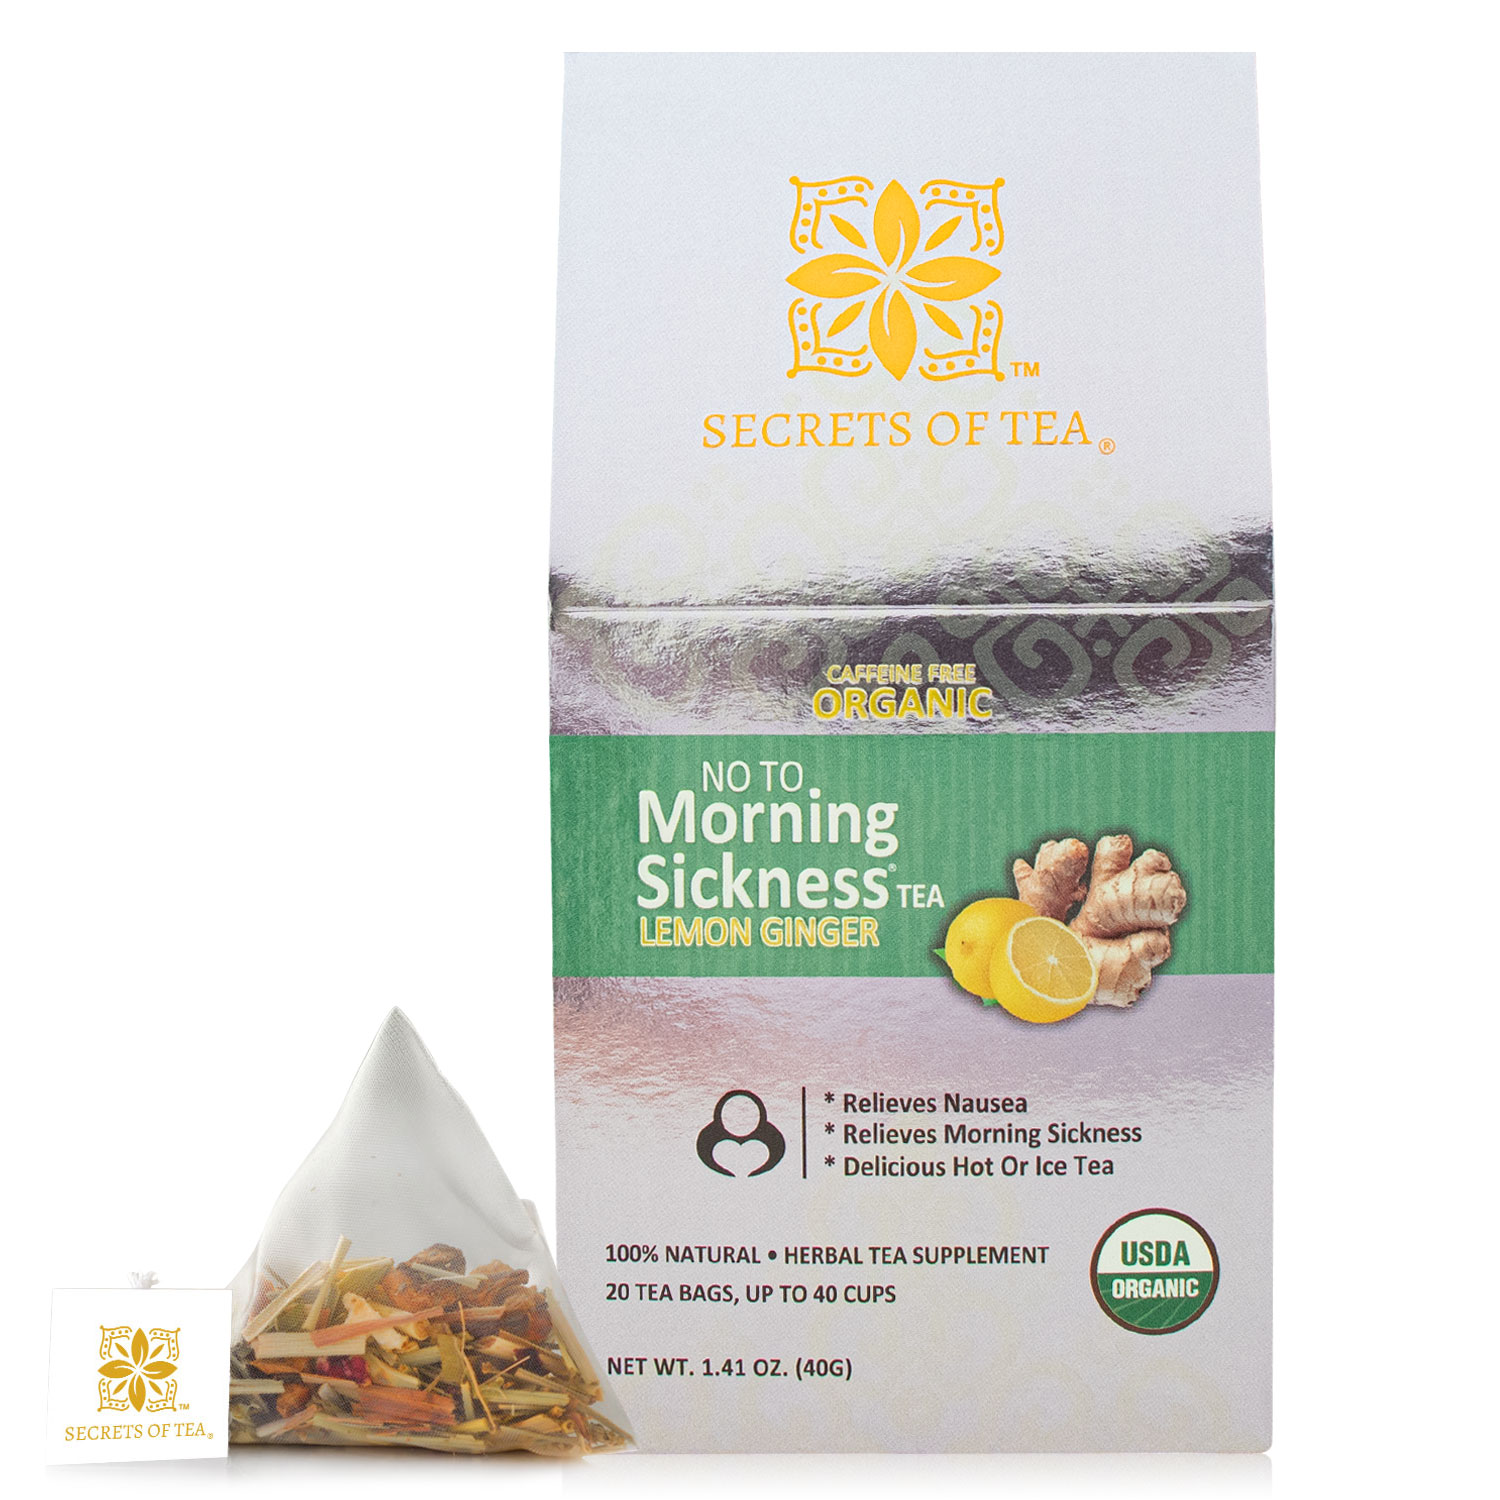 Secrets of Tea No-to-Morning-Sickness Lemon Ginger Tea 2 innerpacks per case 2.0 oz